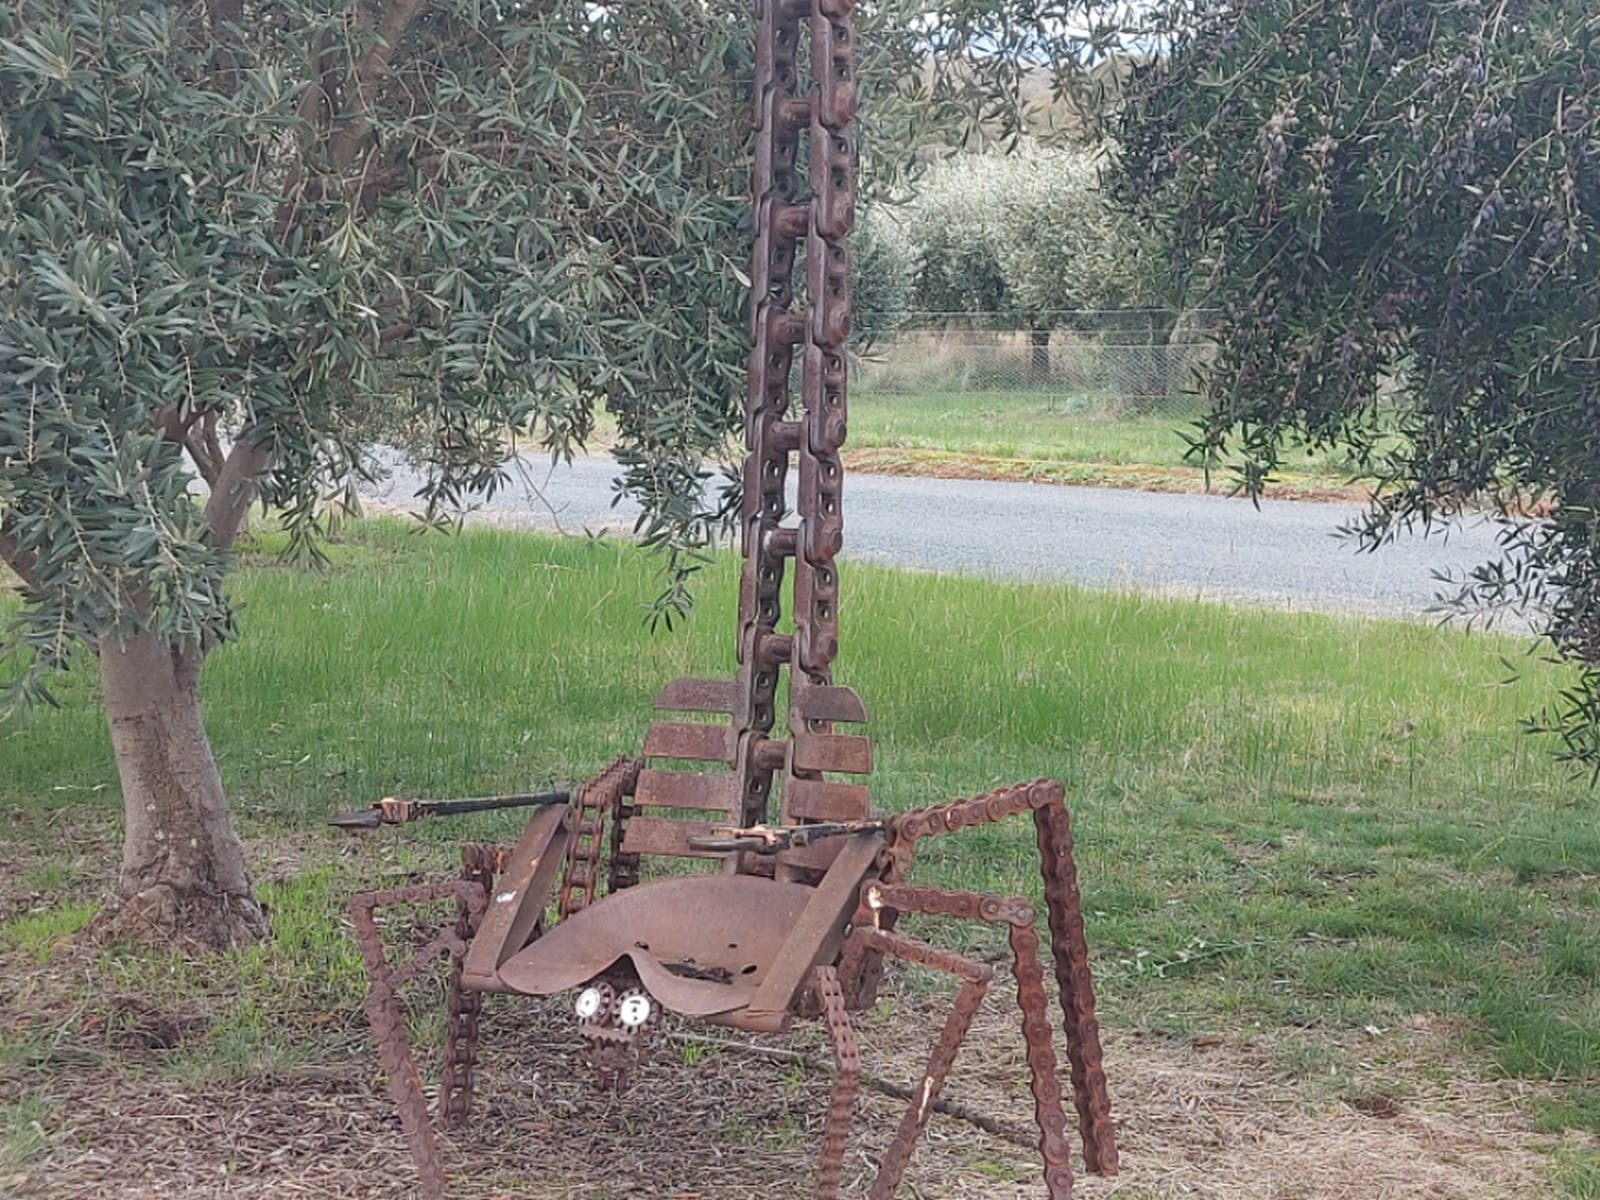 The Scorpion at Gooramadda Olives